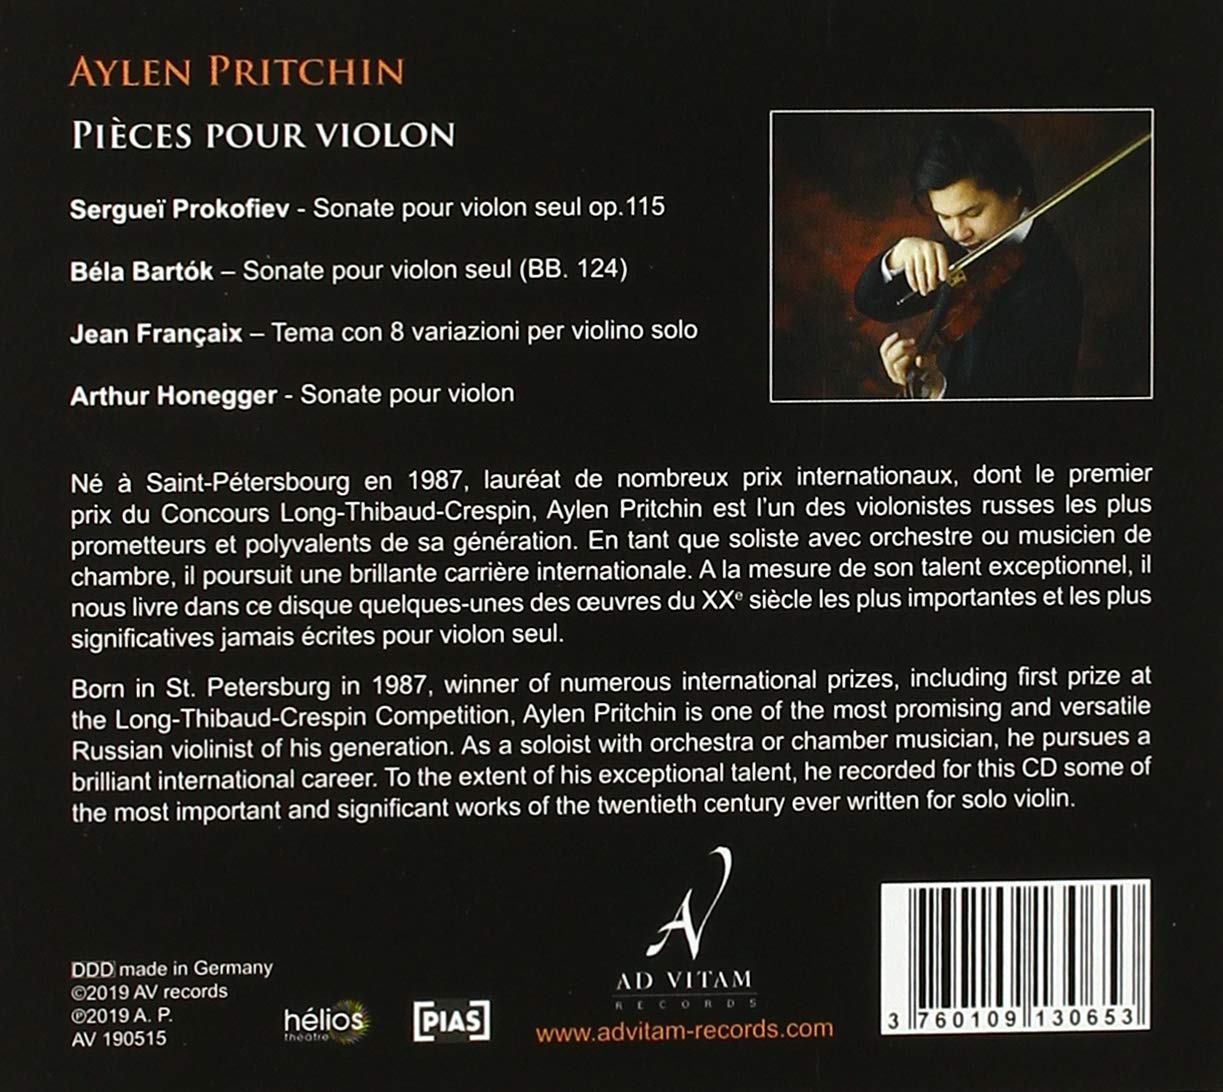 Aylen Pritchin 바이올린 독주 모음집 - 에이렌 프리친 (Pieces pour violon)